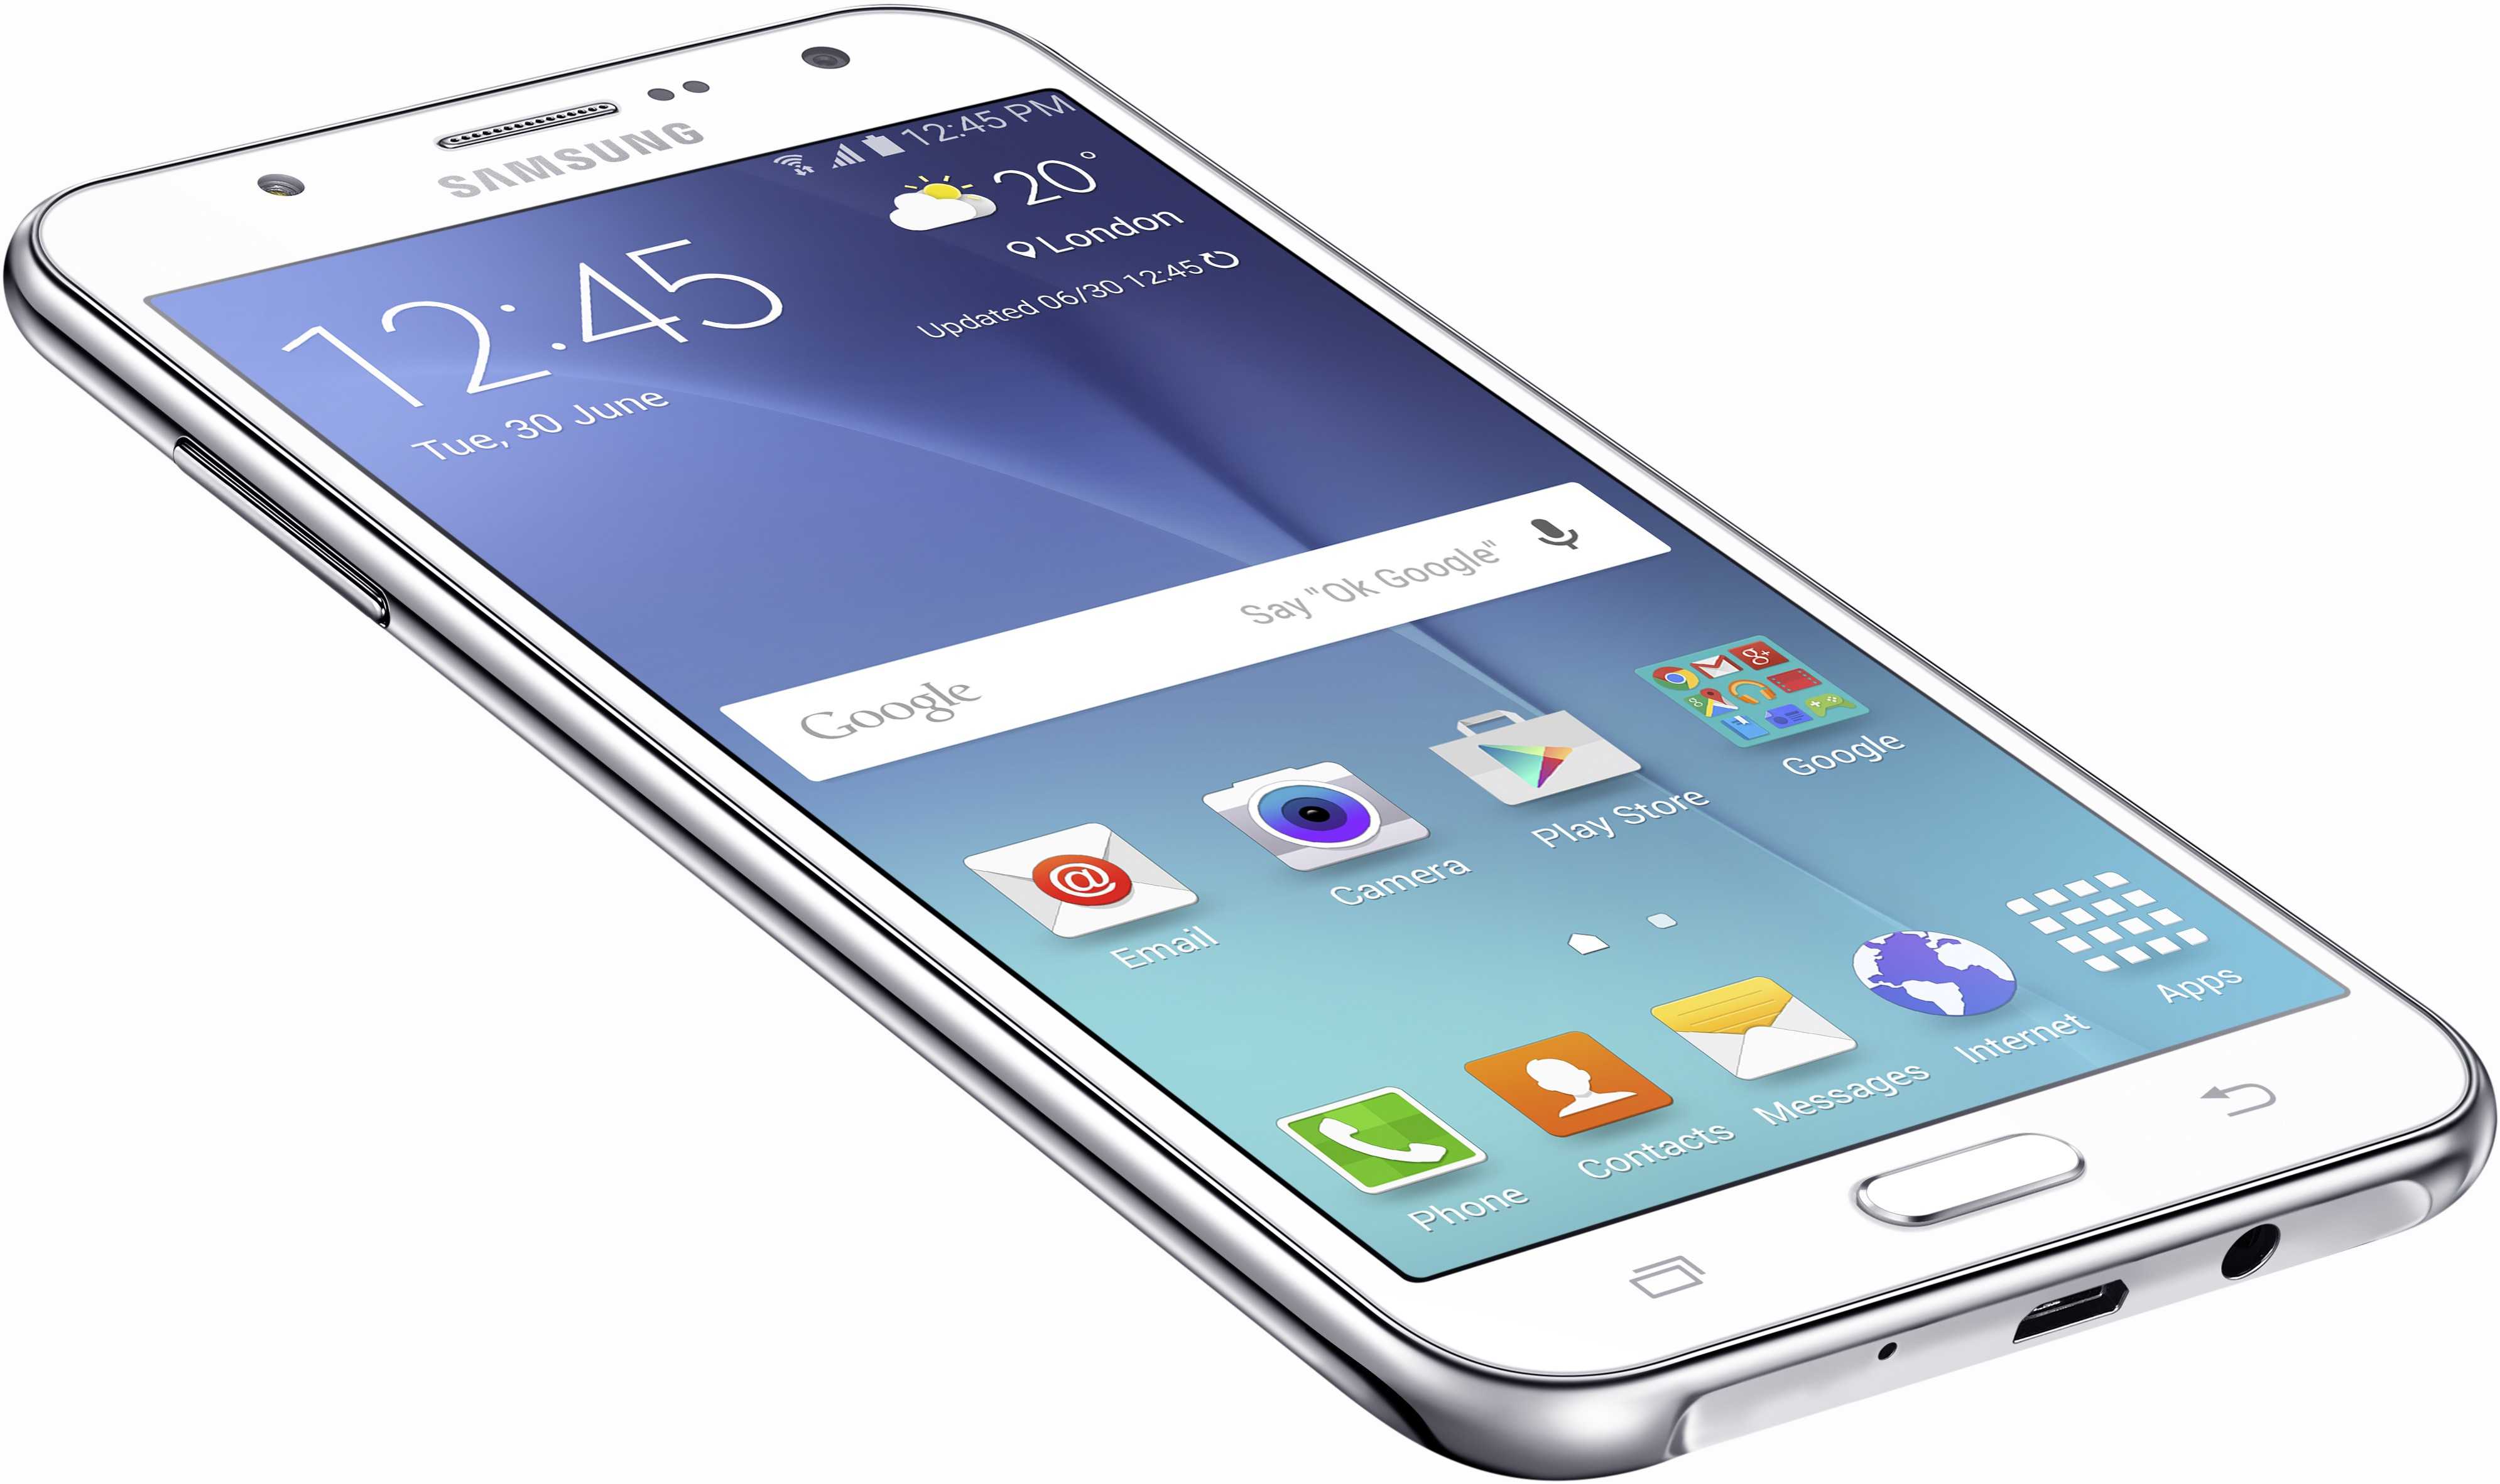 Samsung Galaxy J7 on connait sa fiche technique - Meilleur ... - 3980 x 2363 jpeg 294kB